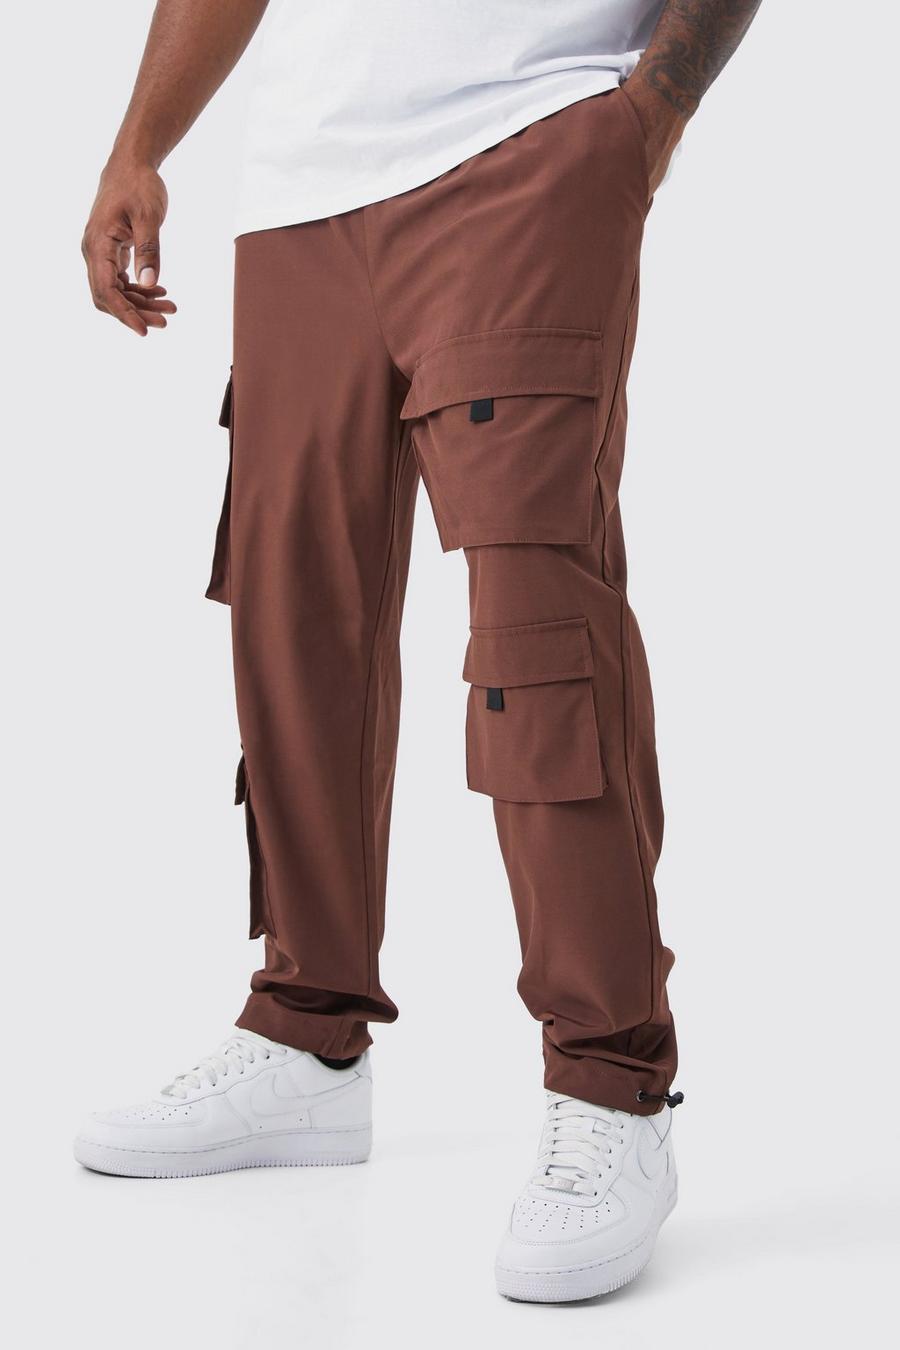 Pantalón Plus ajustado elástico con multibolsillos cargo, Chocolate brown